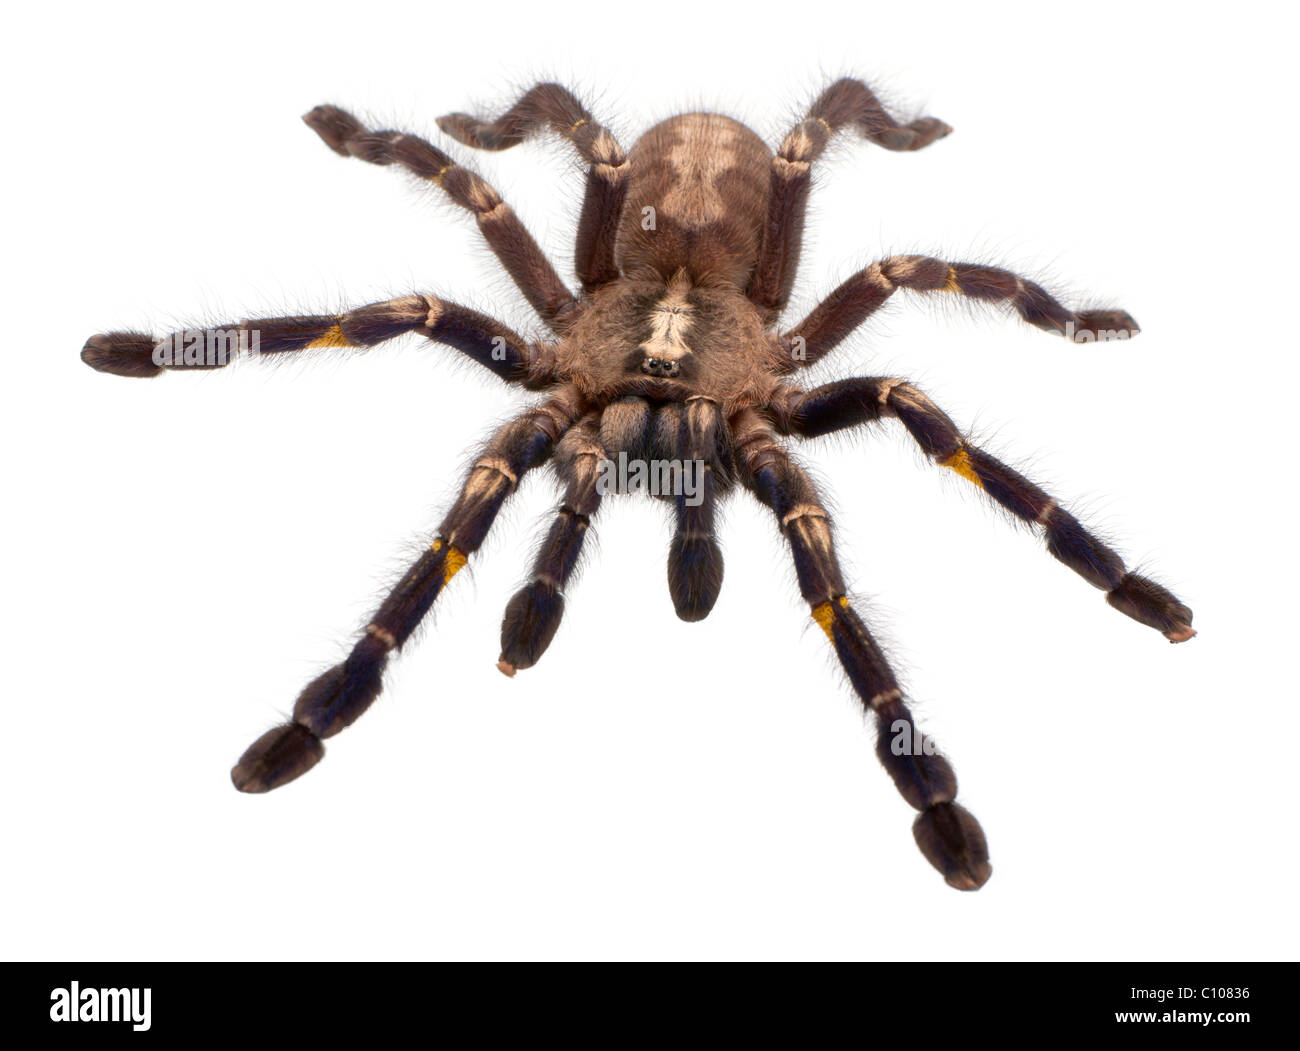 Tarantula spider, Poecilotheria metallica, di fronte a uno sfondo bianco Foto Stock